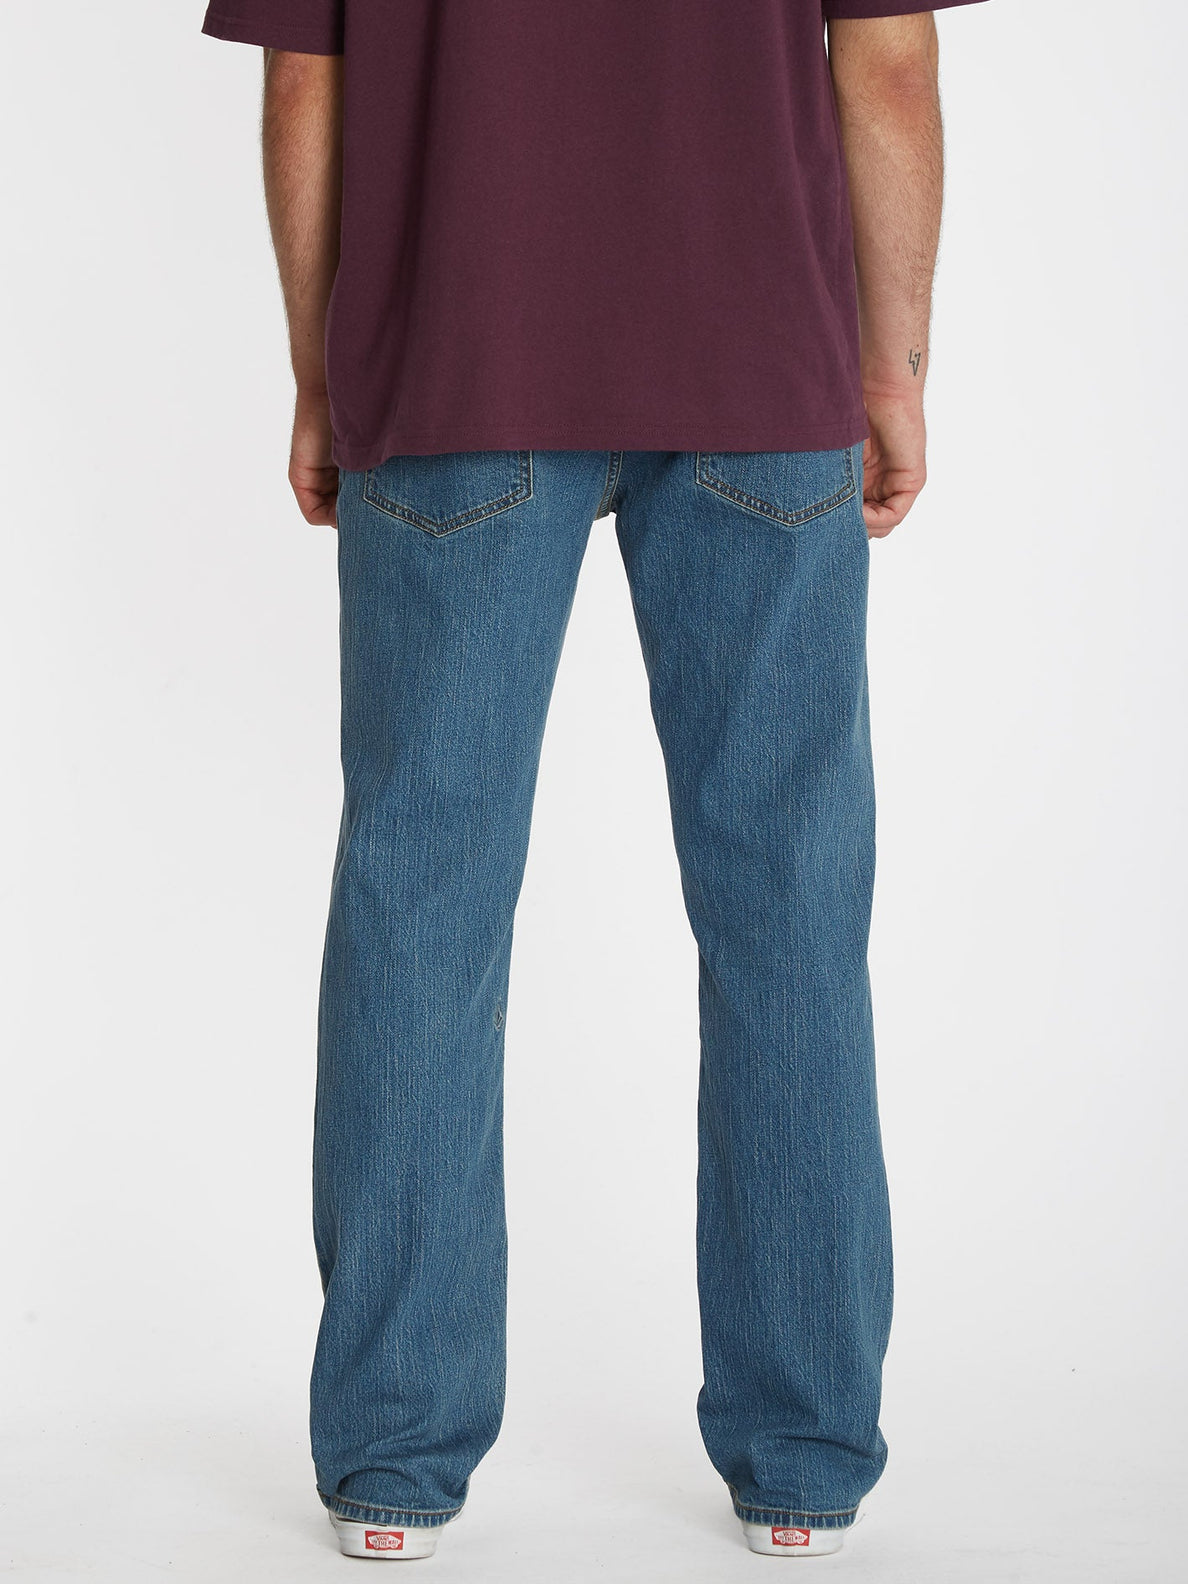 Solver Jeans - AGED INDIGO (A1912303_AIN) [B]